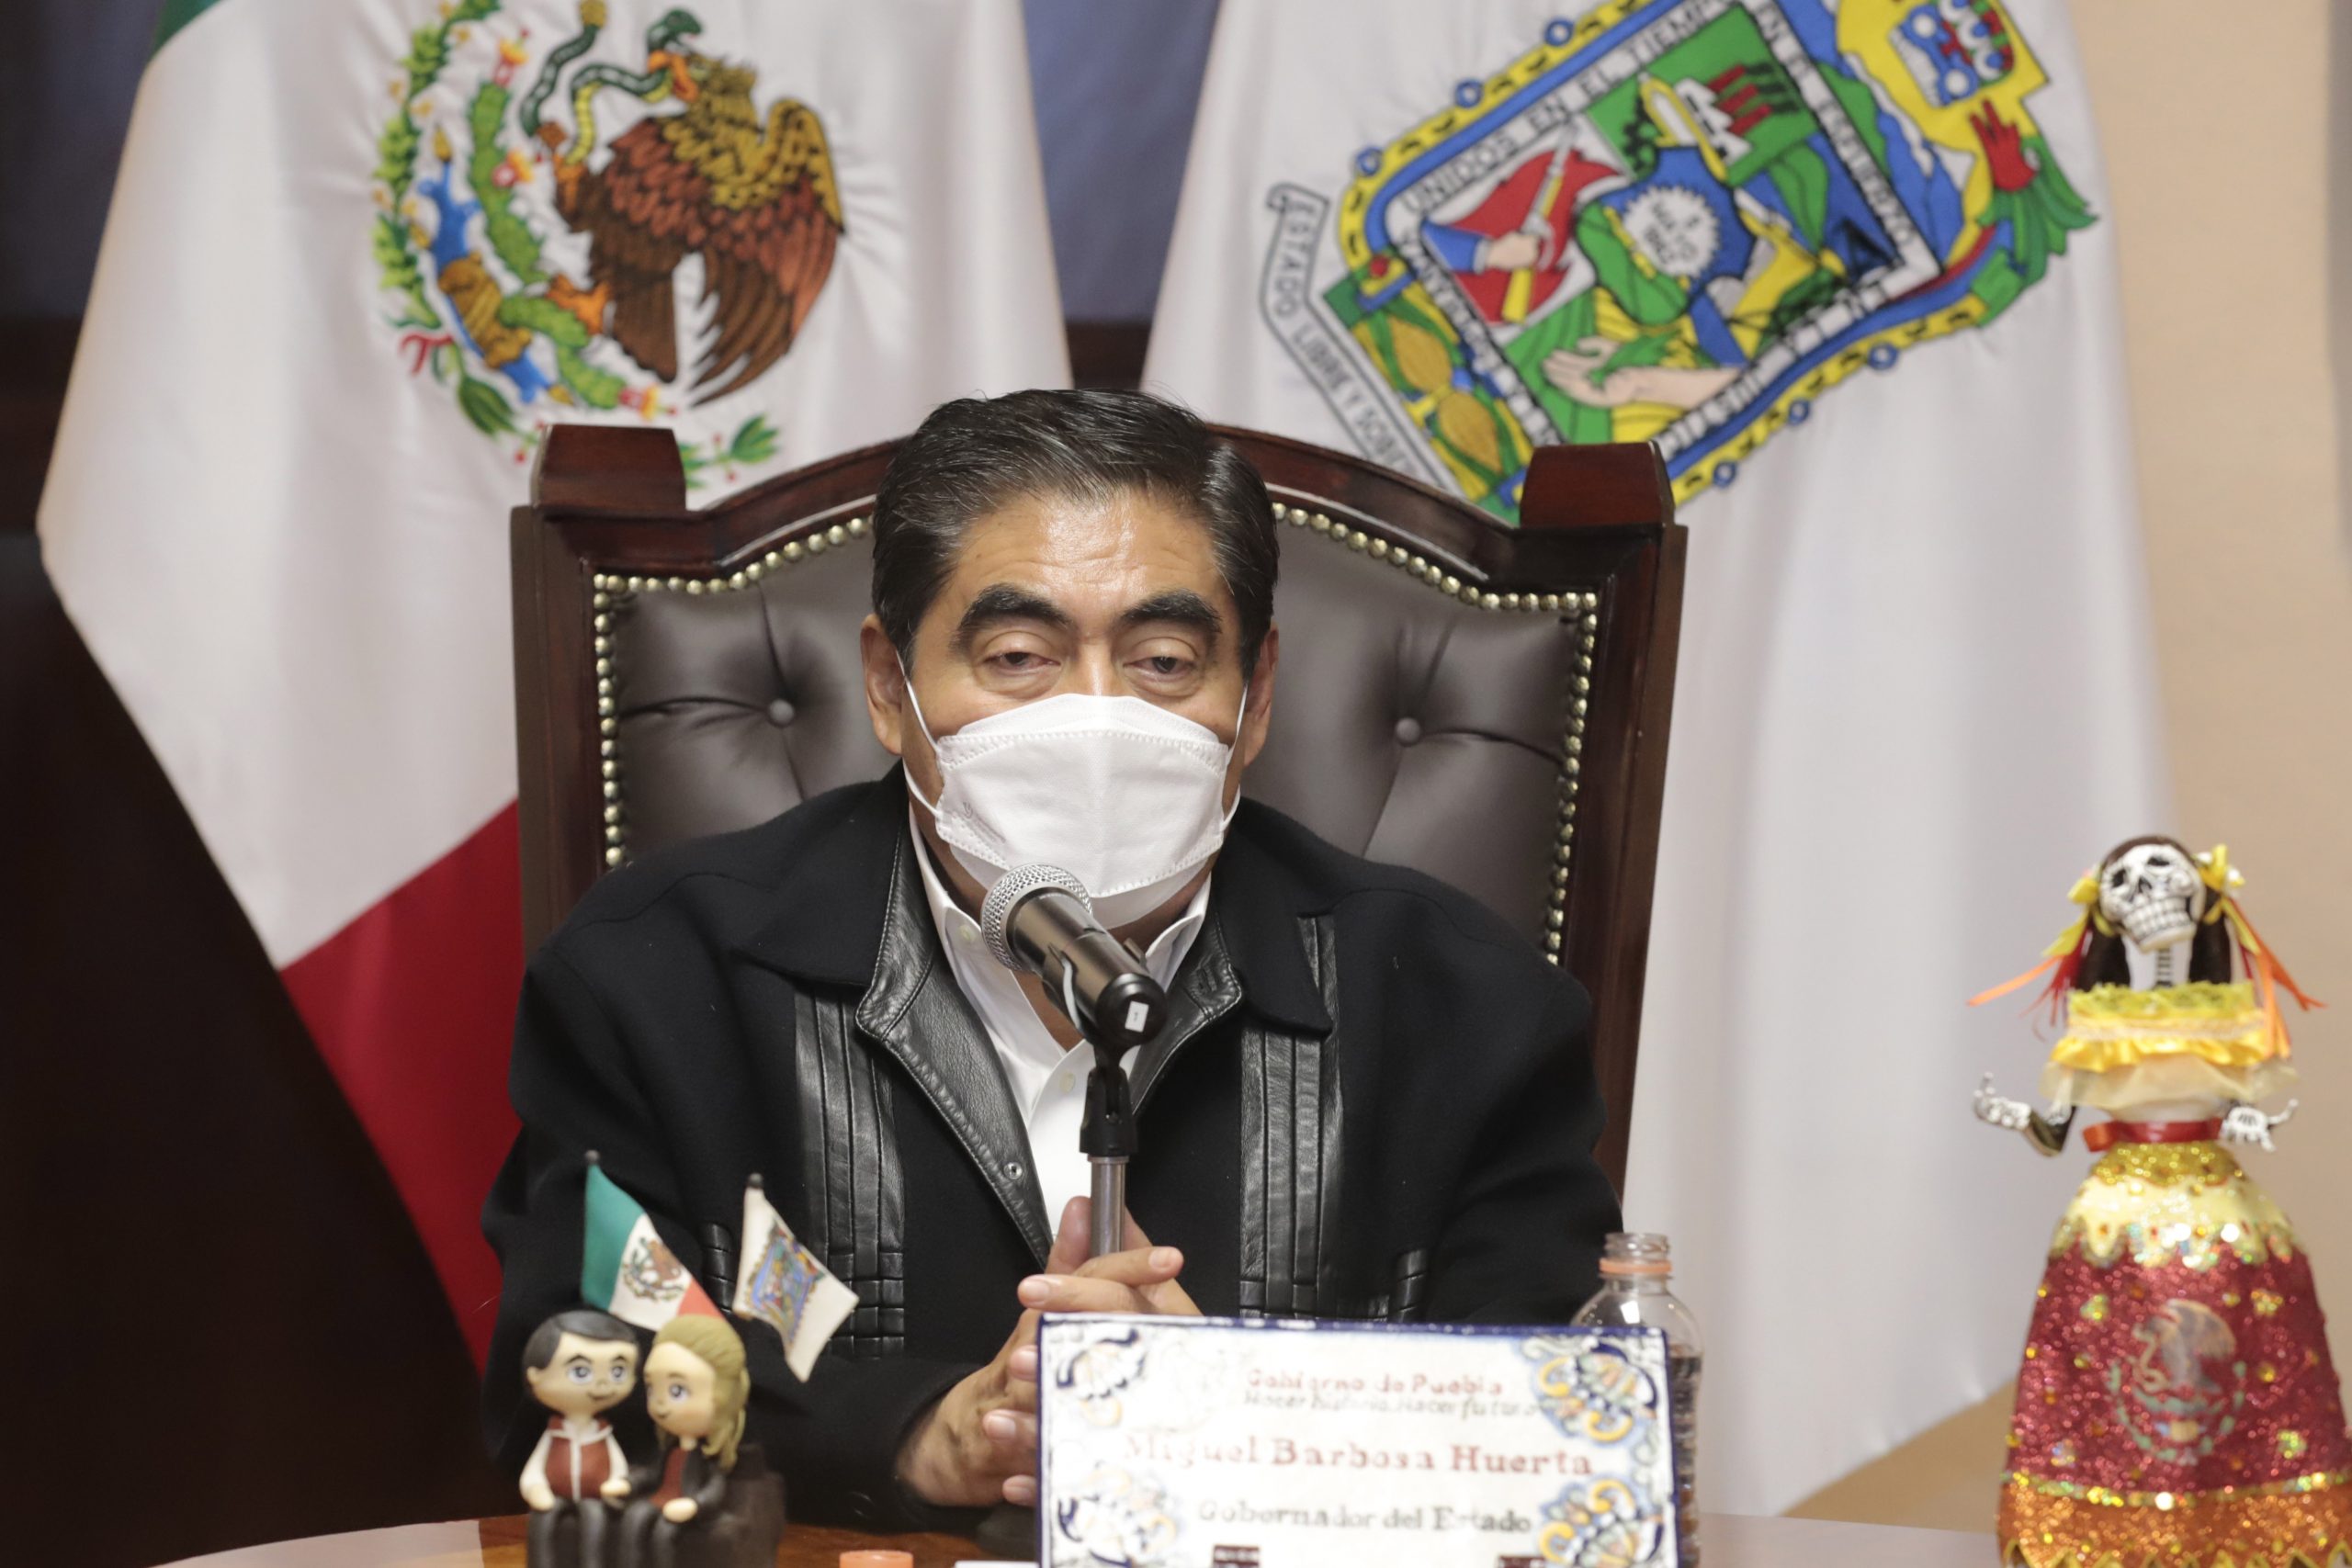 Video desde Puebla: Presenta gobierno estatal “¡Que Reviva Puebla!”, un plan de reactivación económica de más de 300 actividades